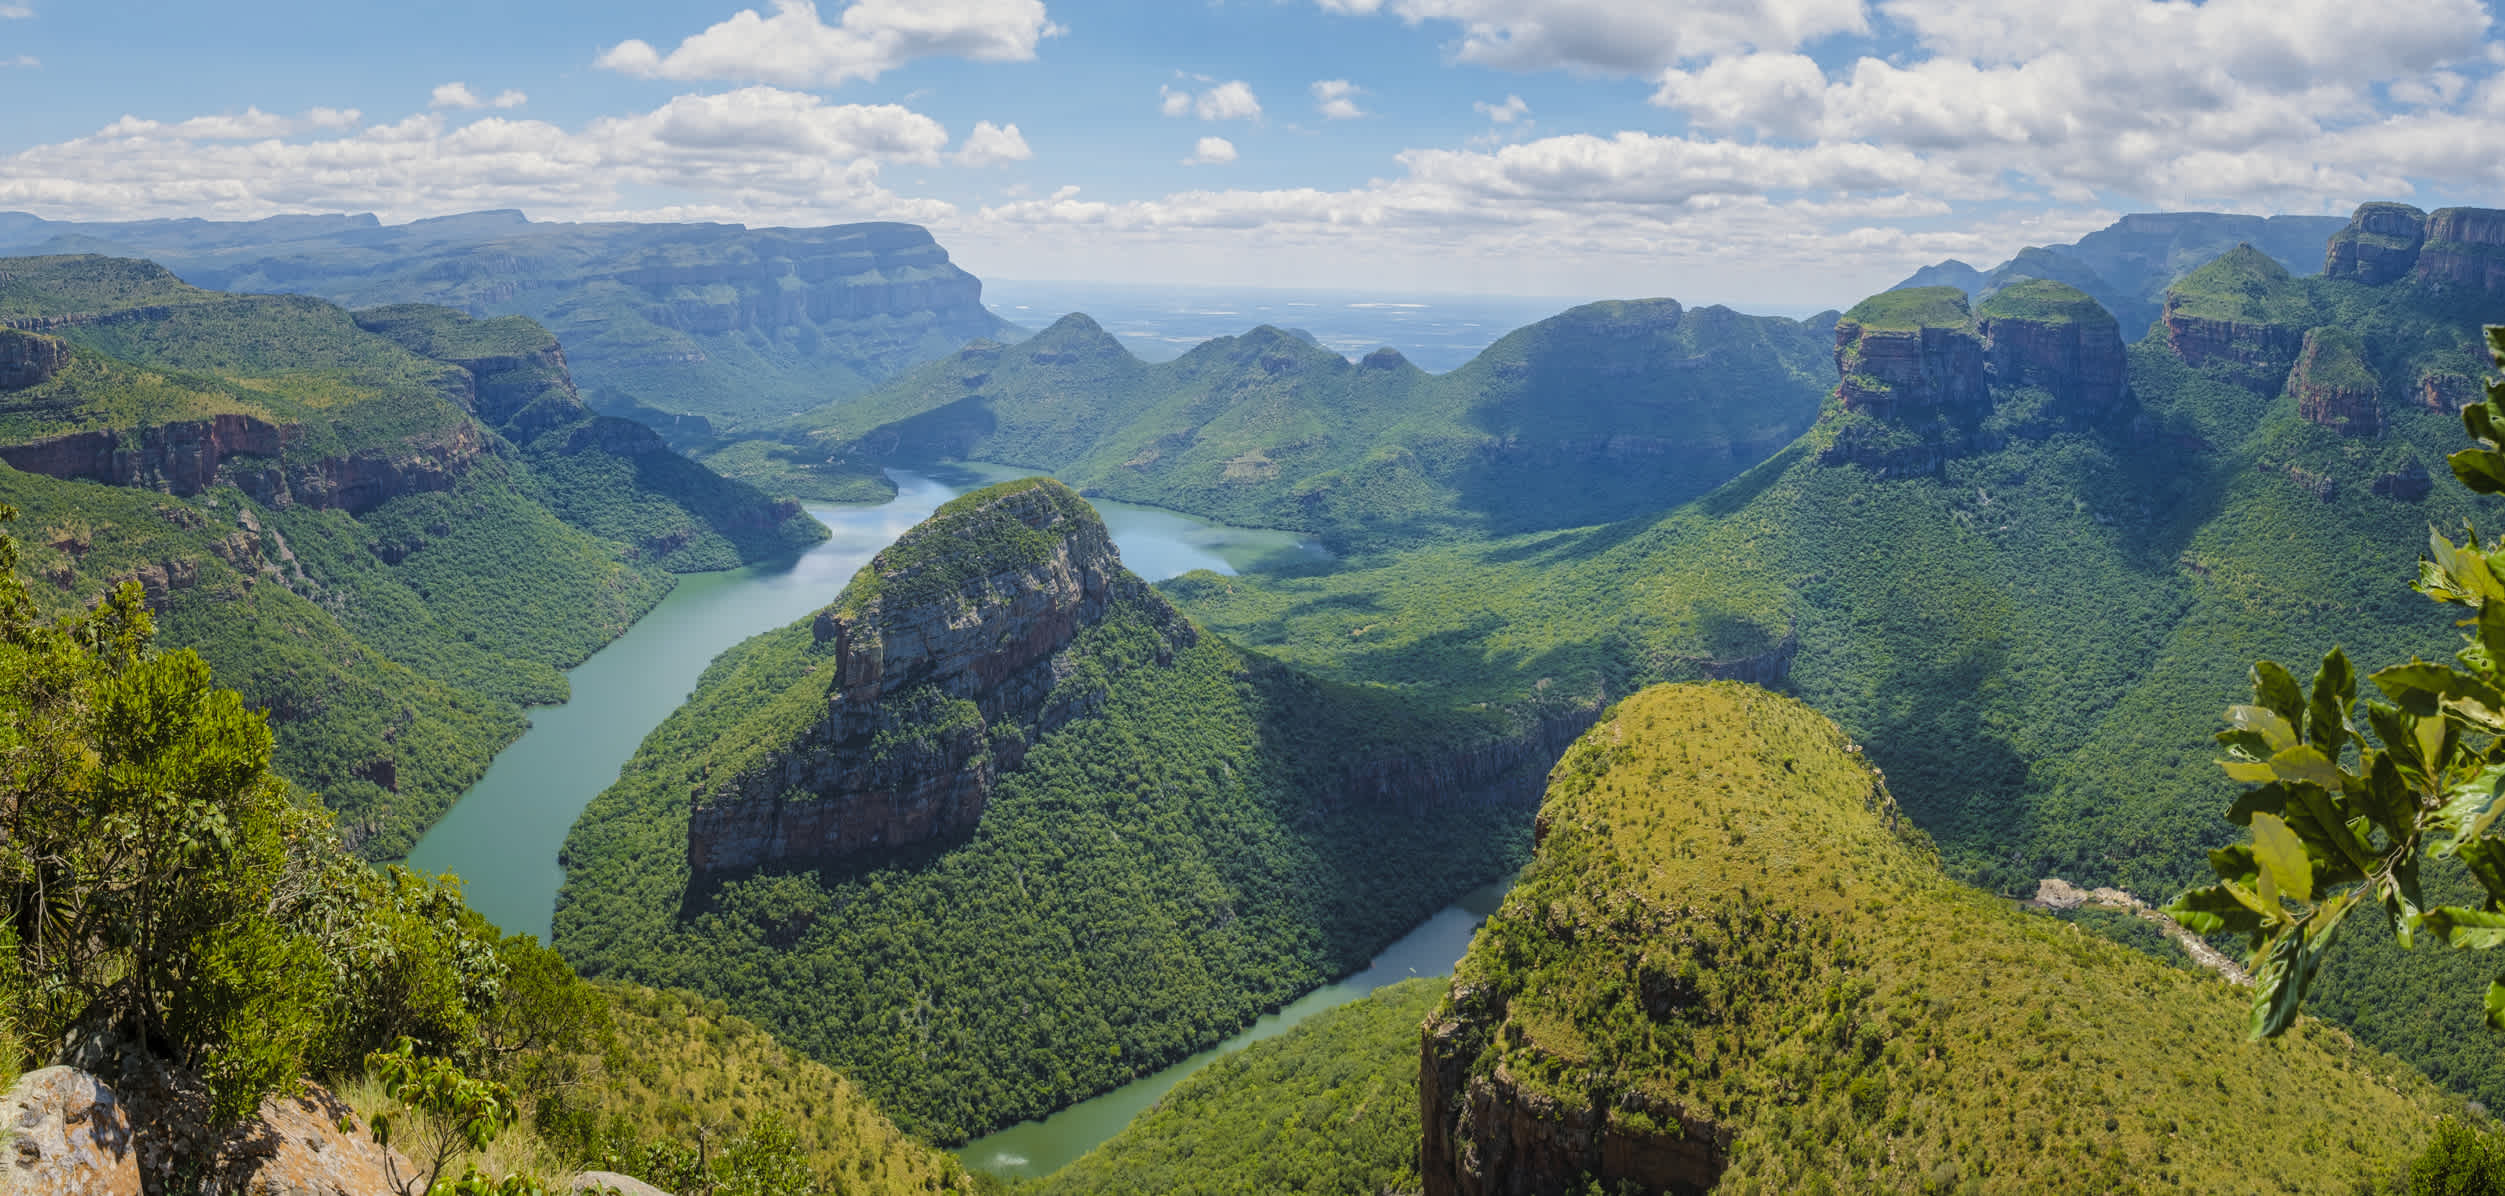 Panorama Route Südafrika, Blyde River Canyon mit den drei Rondavels, beeindruckender Blick auf drei Rondavels und den Blyde River Canyon in Südafrika.